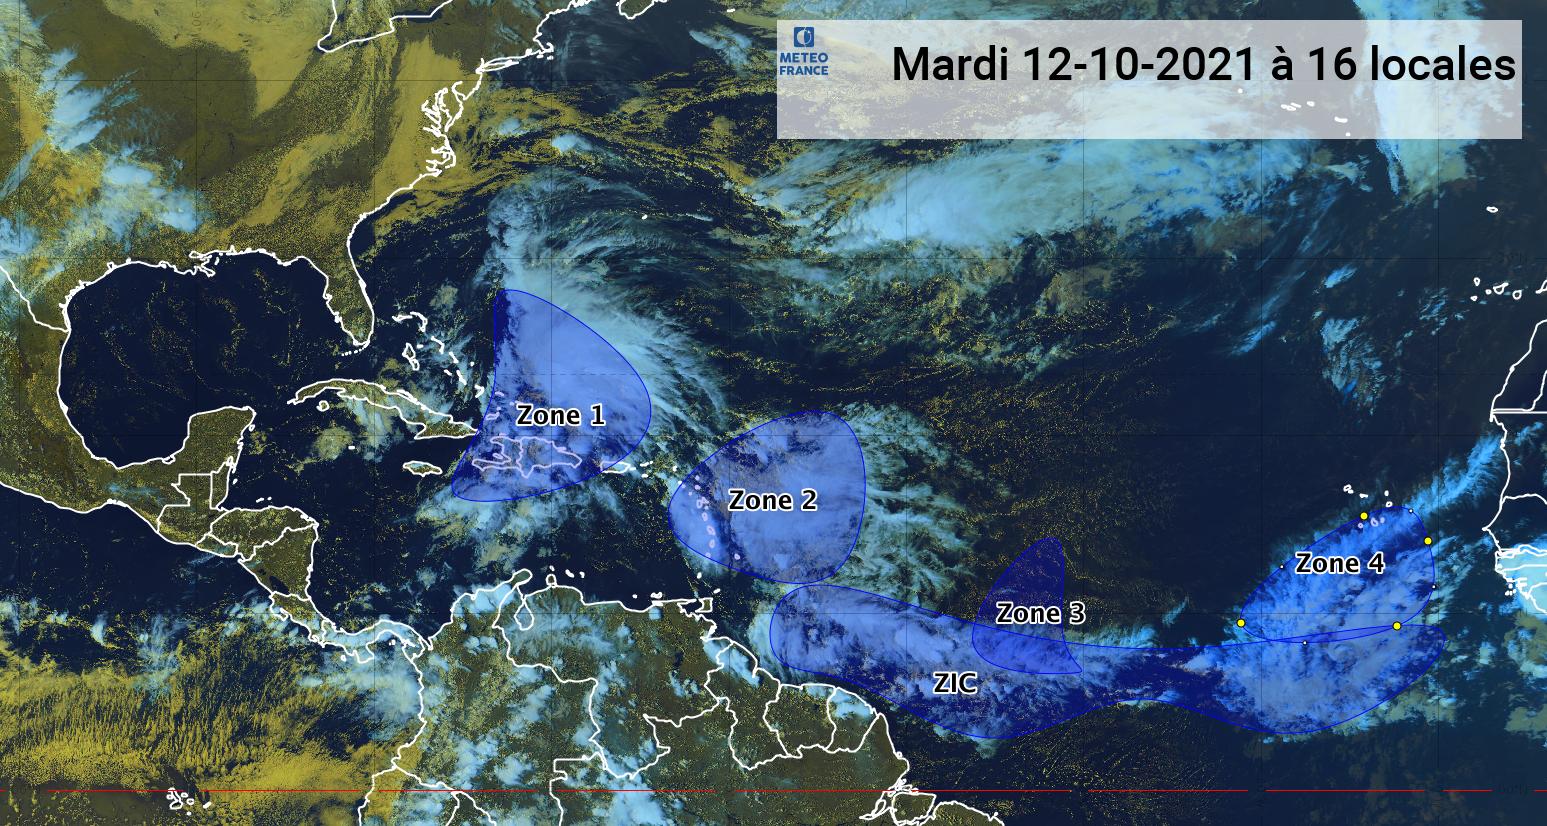     Trois ondes tropicales présentes dans l'Atlantique (bulletin du 12/10/21)

